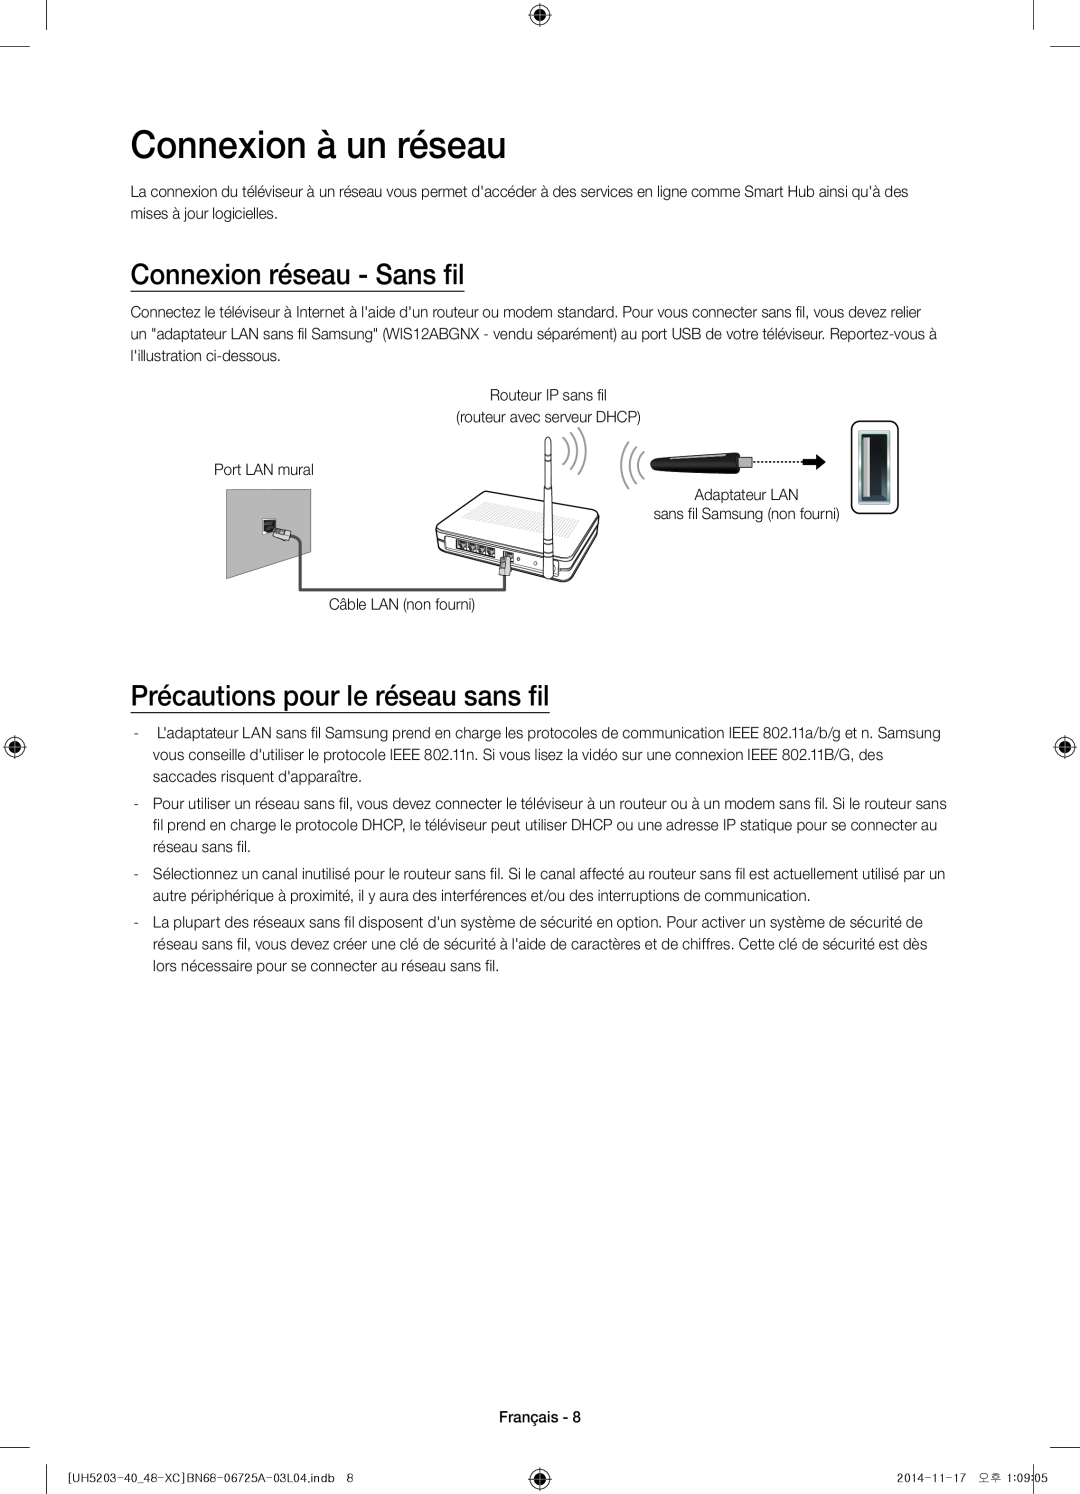 Samsung UE40H5203AWXXC manual Connexion à un réseau, Connexion réseau - Sans fil, Précautions pour le réseau sans fil 